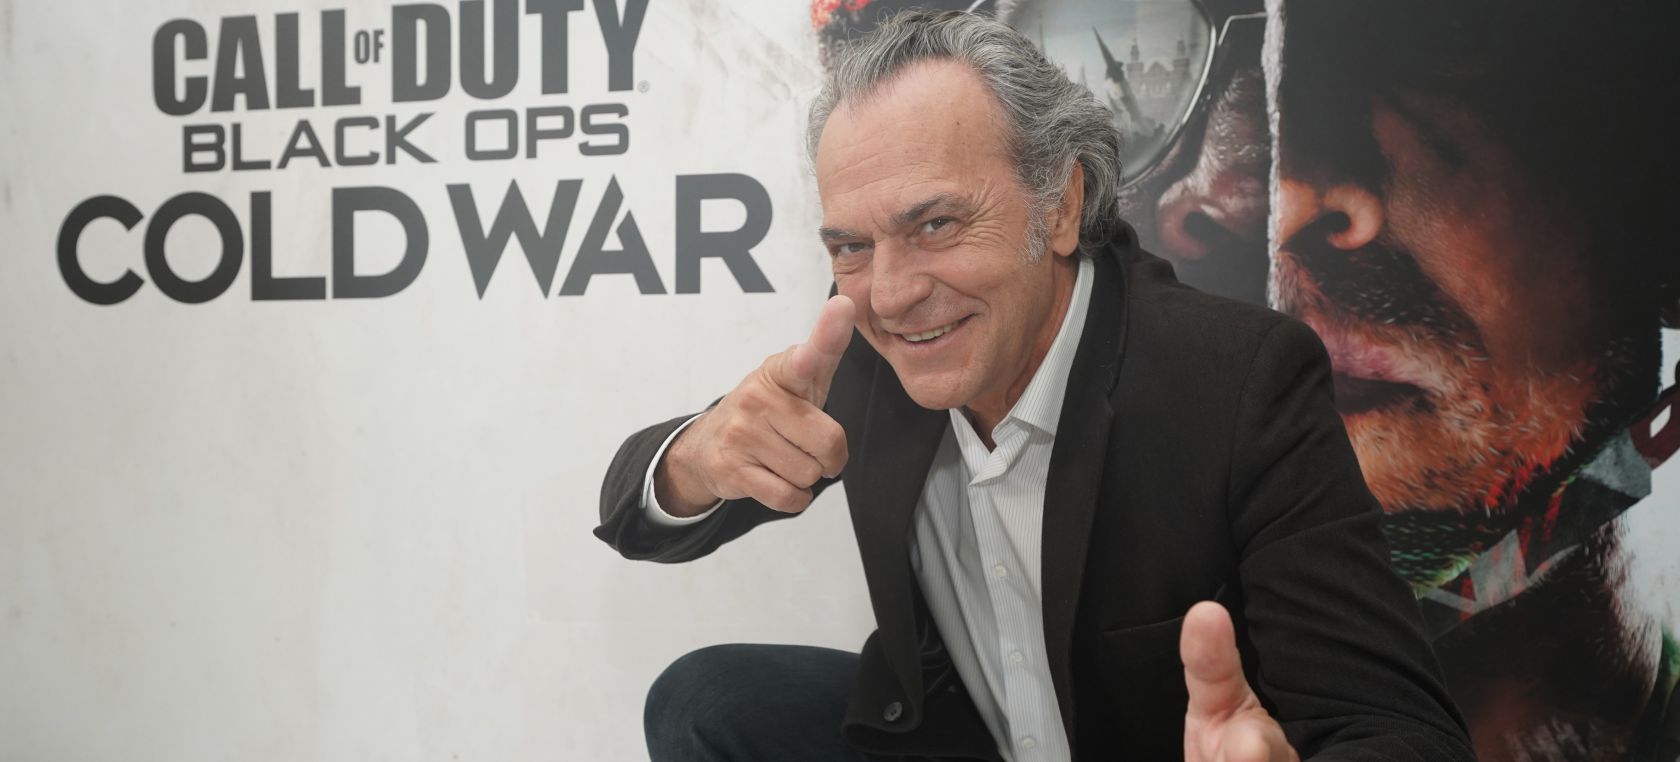 José Coronado Call of Duty Black Ops Cold War